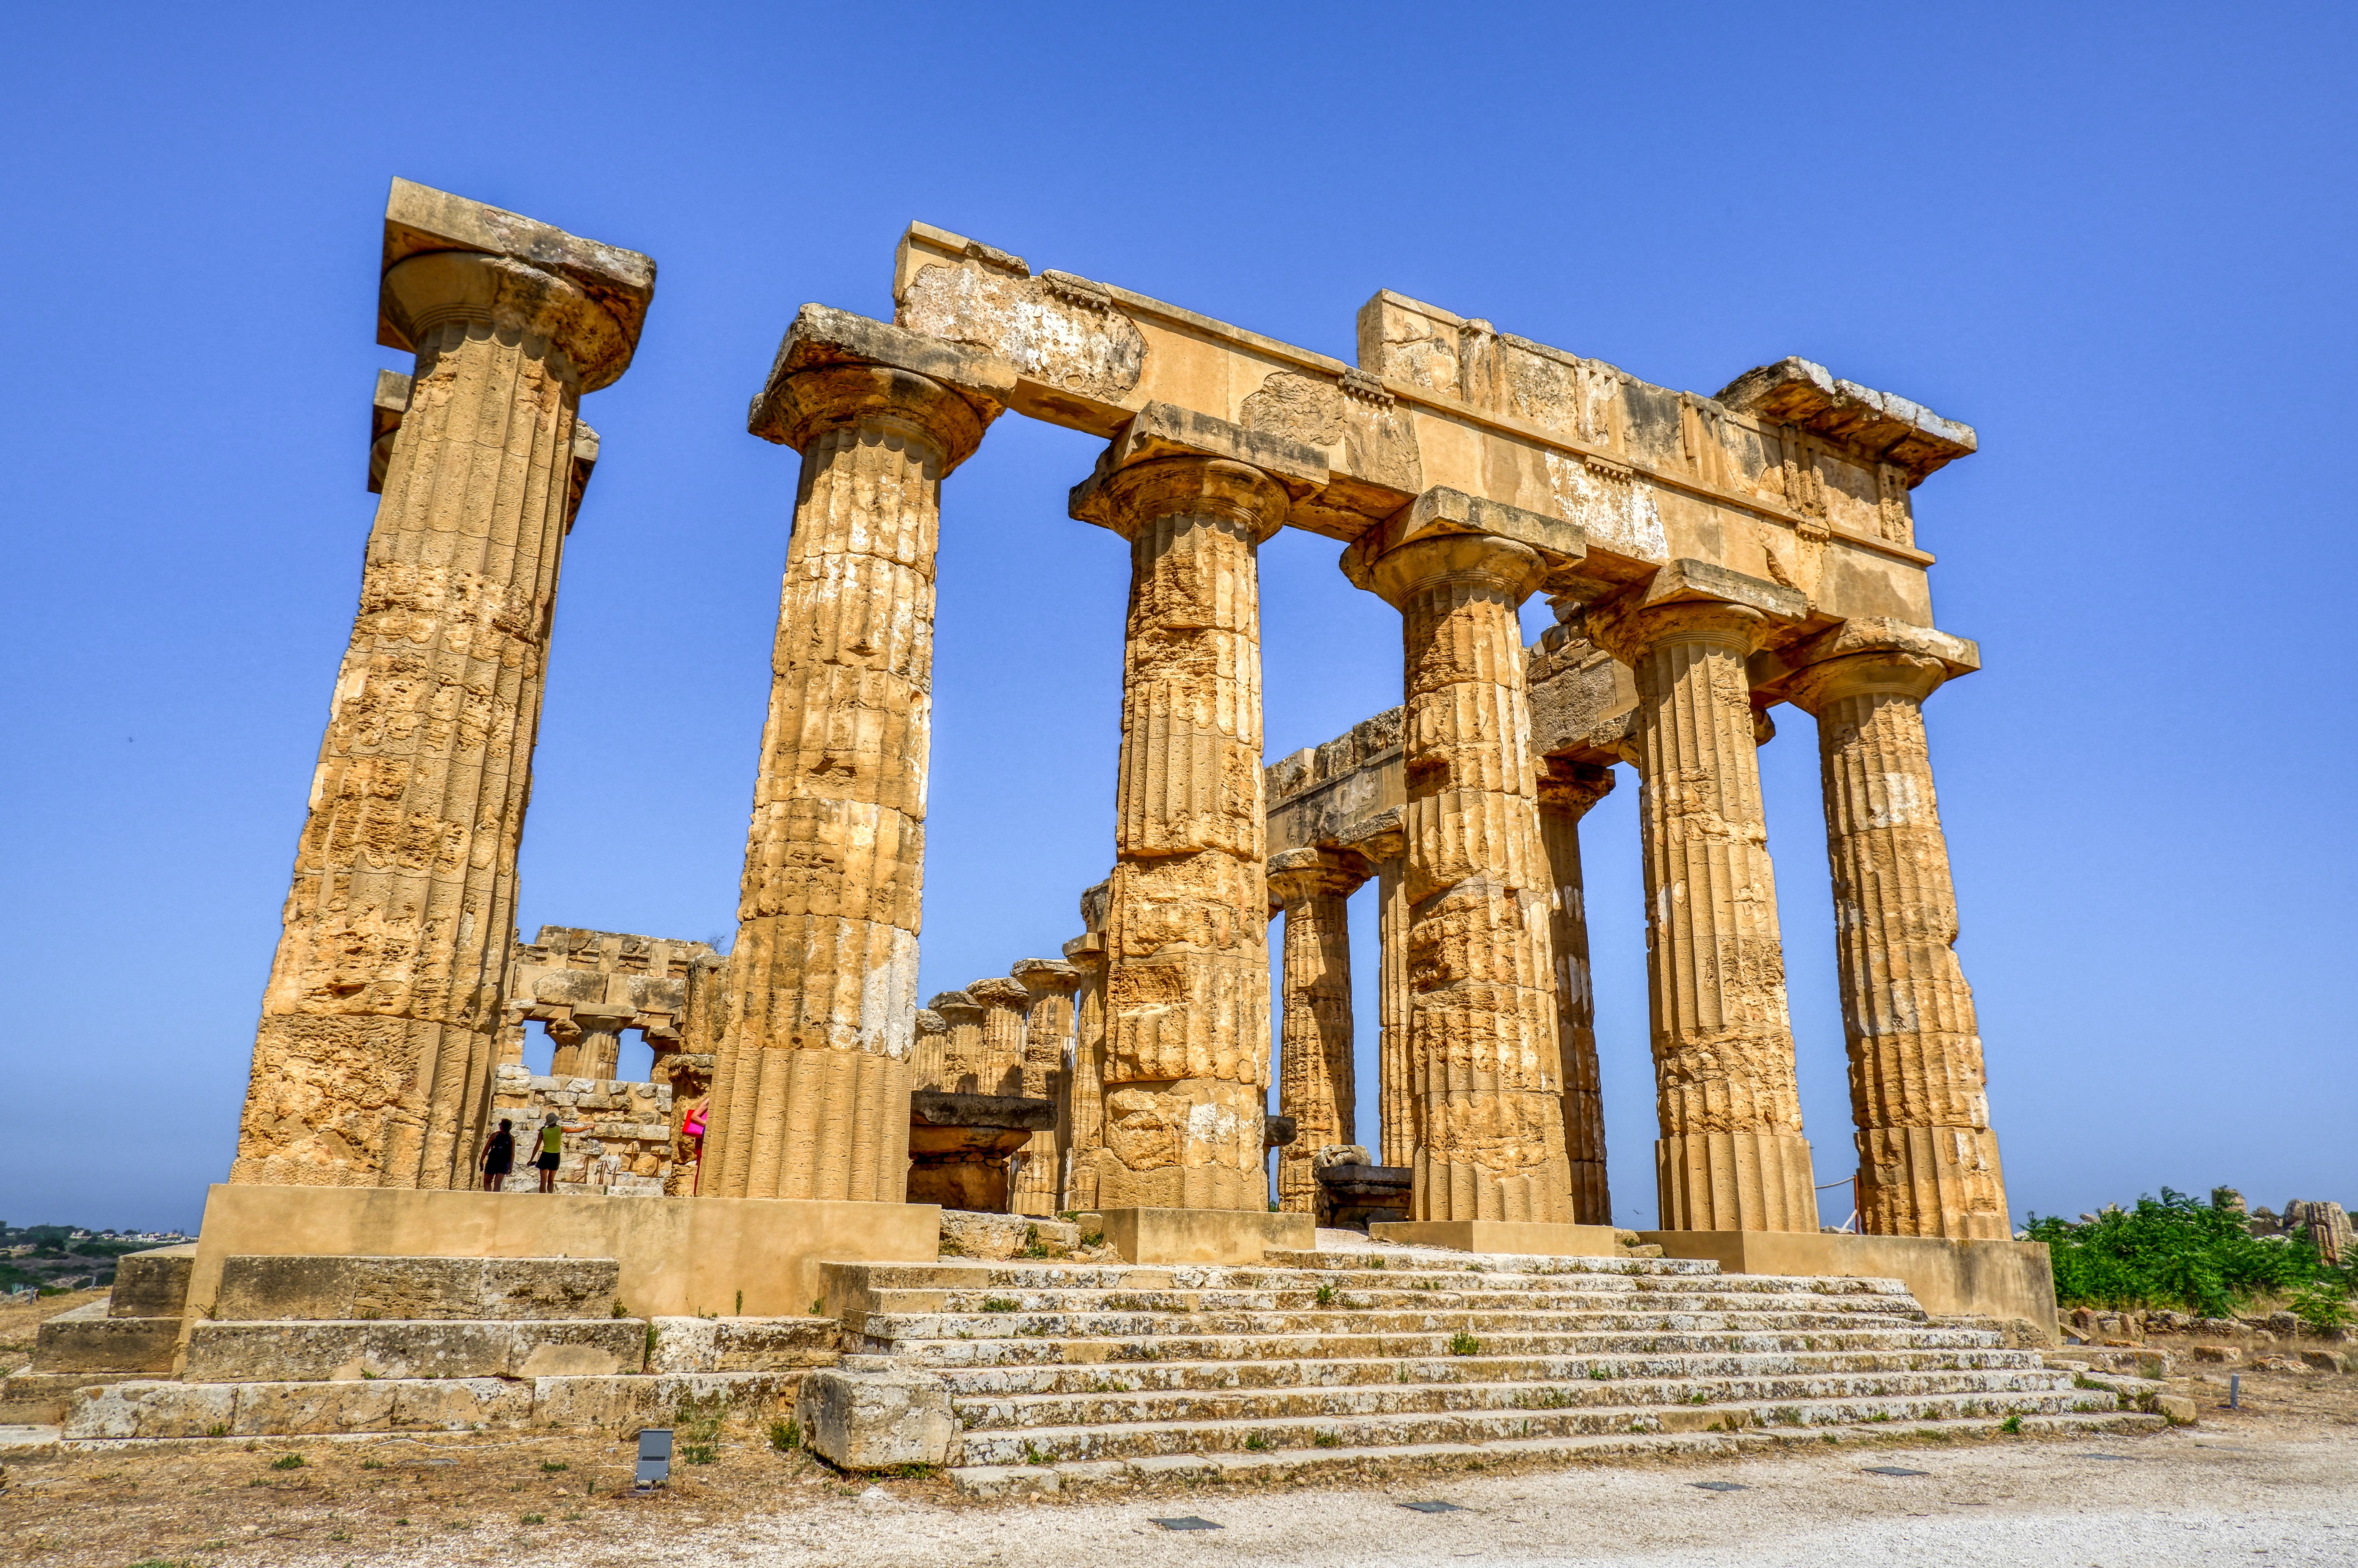 Beginnnersgids Sicilië: geschiedenis en cultuur (deel 2)